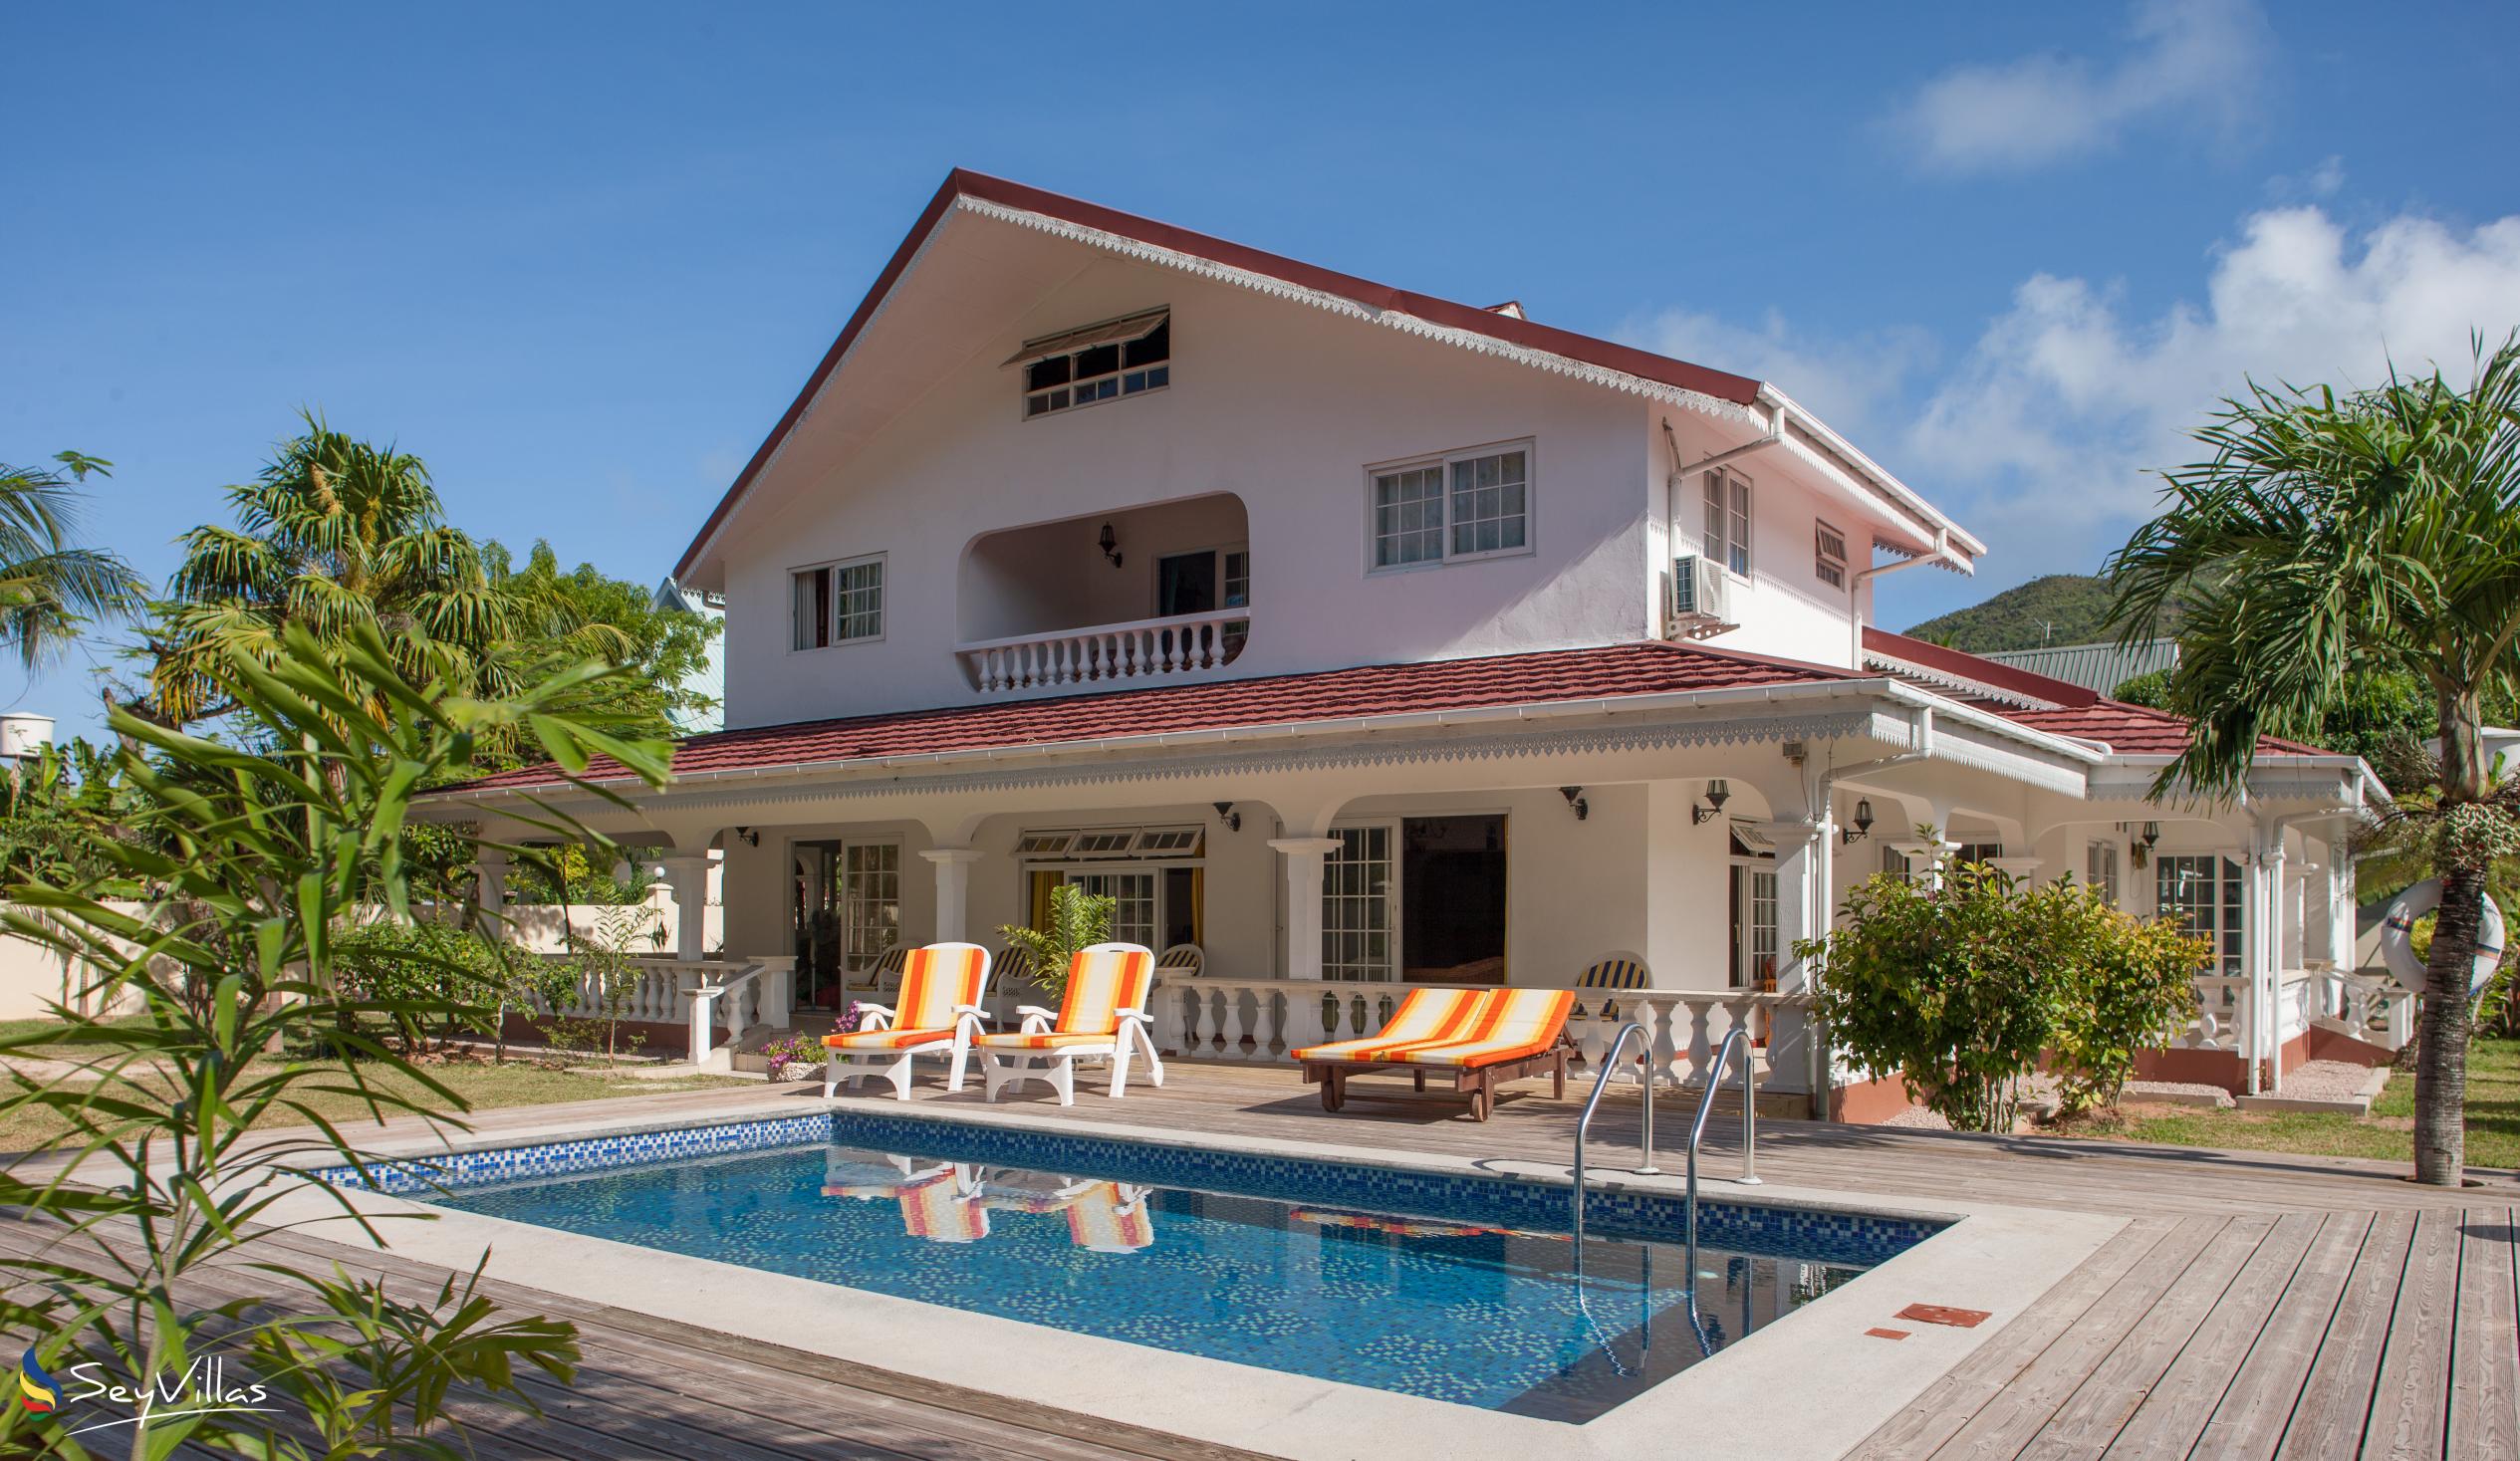 Photo 2: Villa Confort - Outdoor area - Praslin (Seychelles)